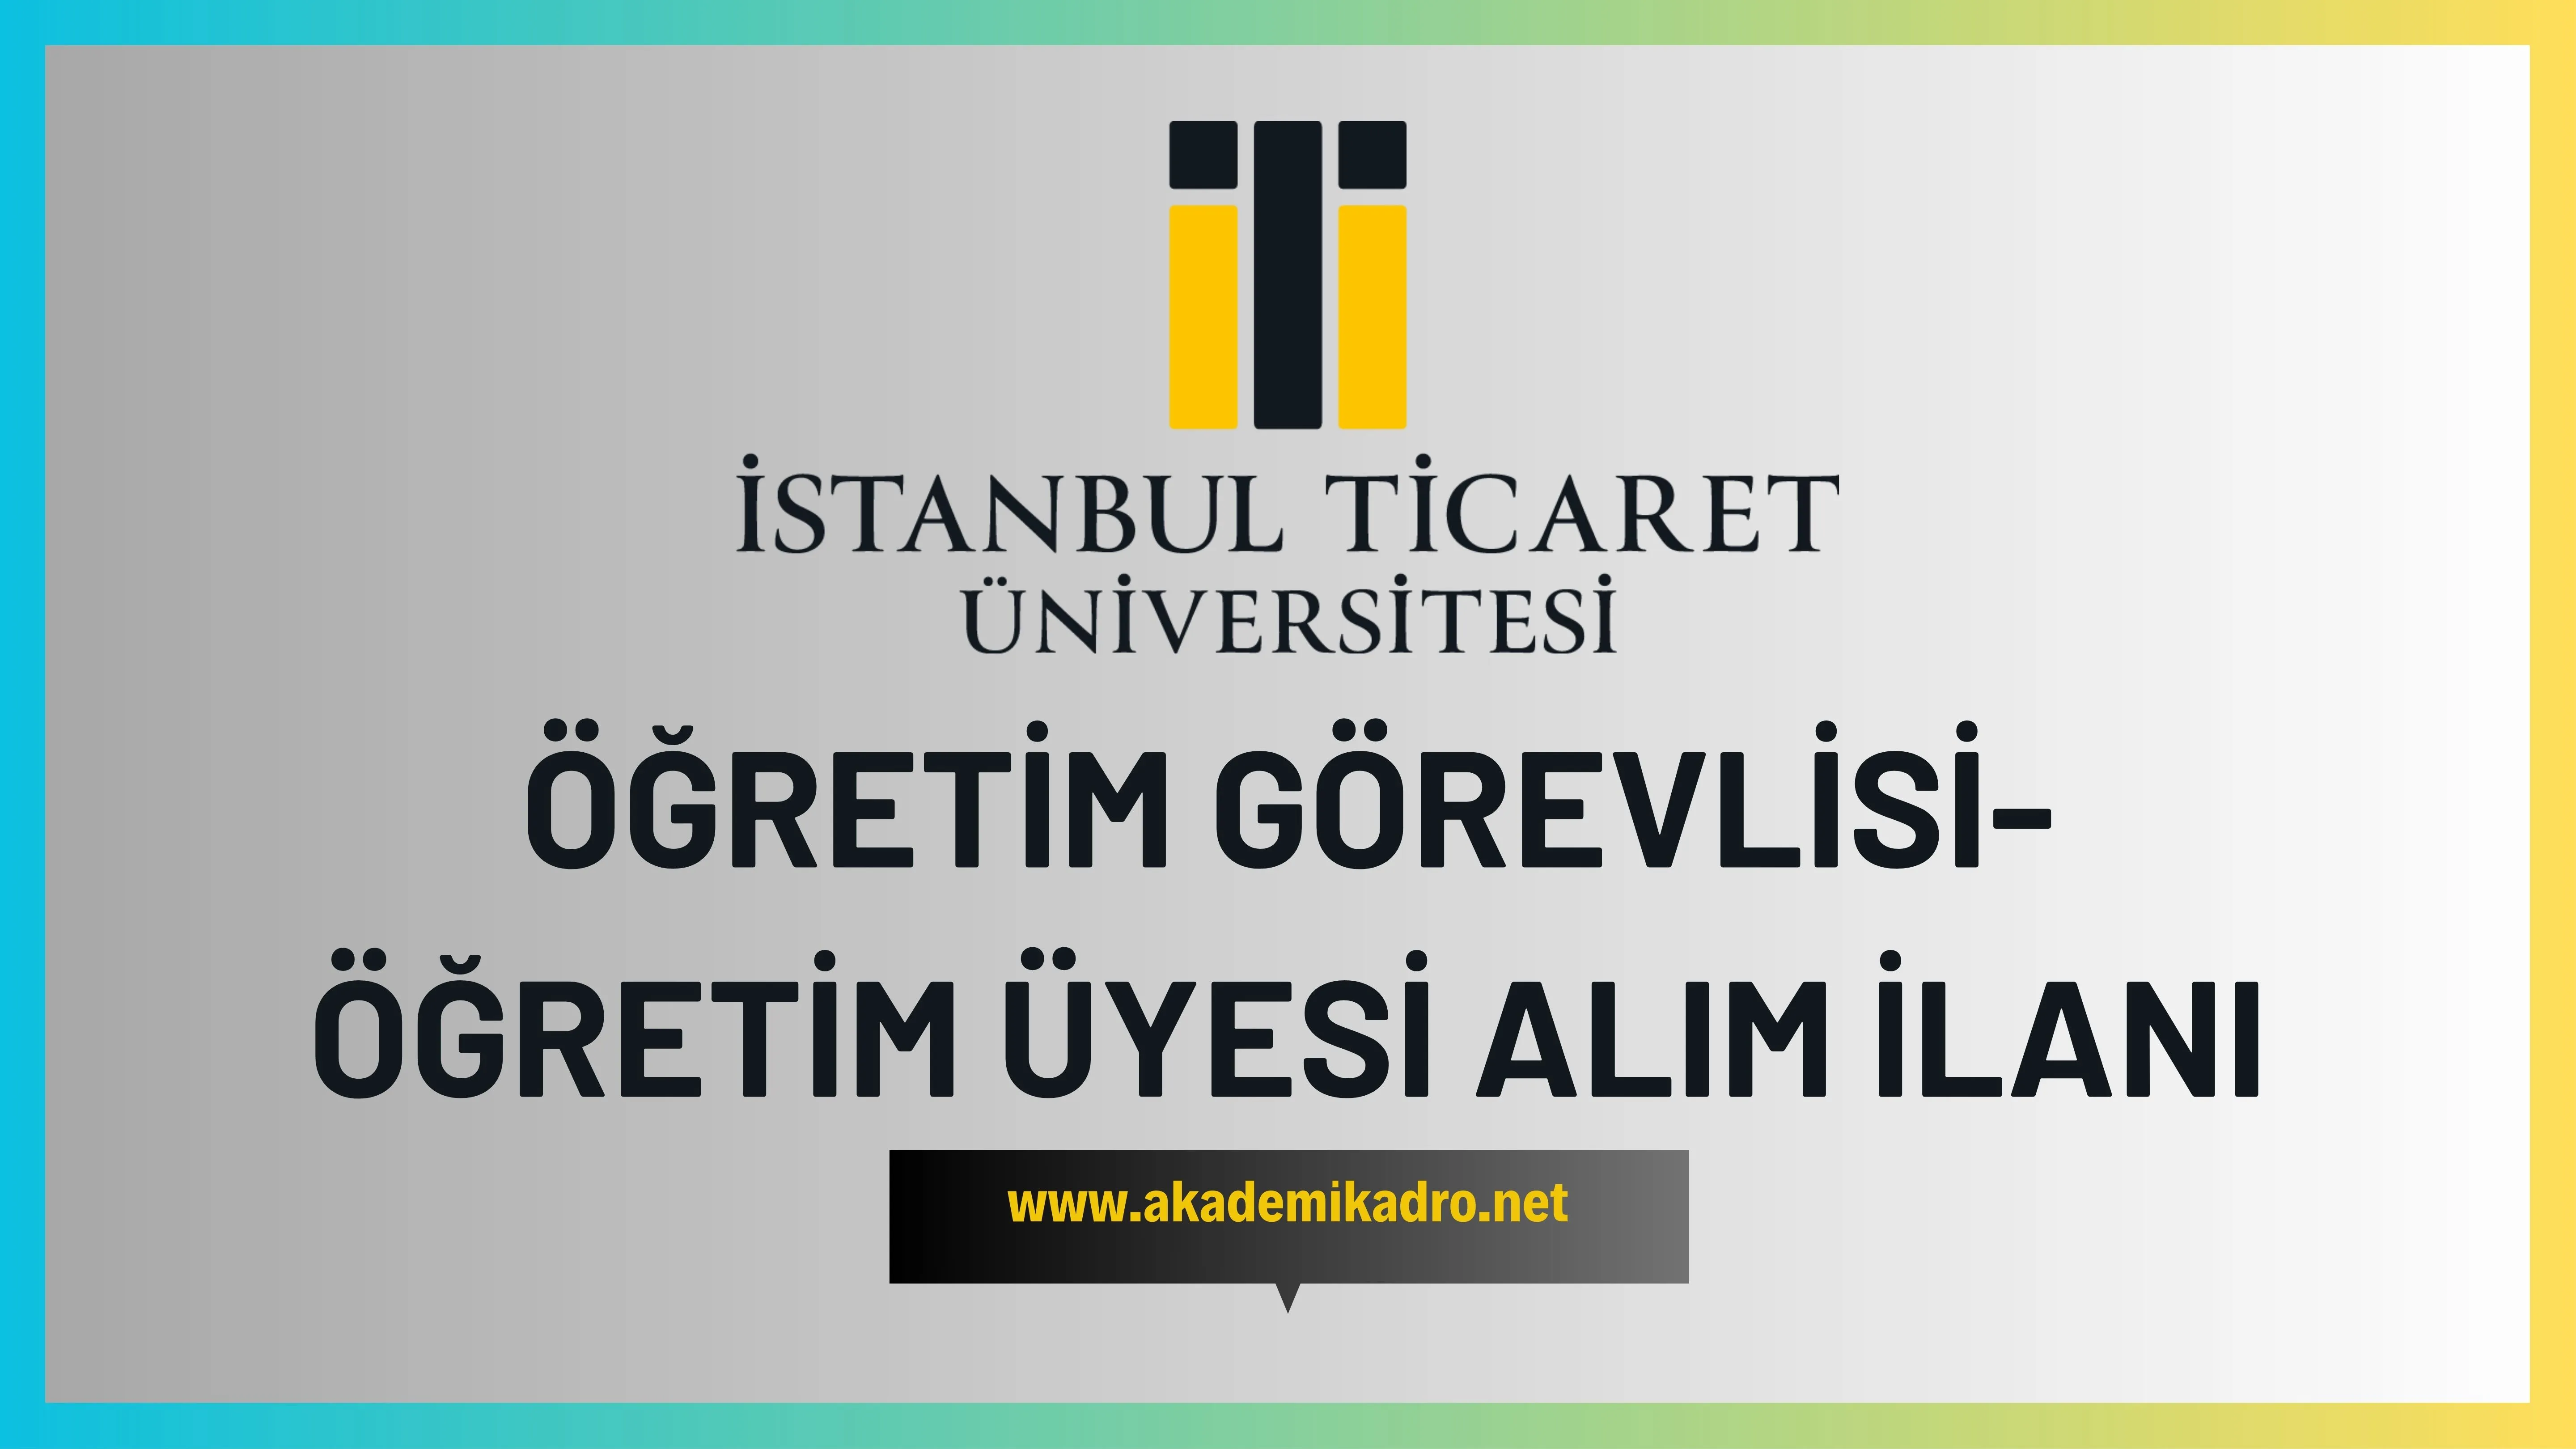 İstanbul Ticaret Üniversitesi 8 Araştırma görevlisi ve birçok alandan 15 öğretim üyesi olmak üzere 23 öğretim elemanı alacak.